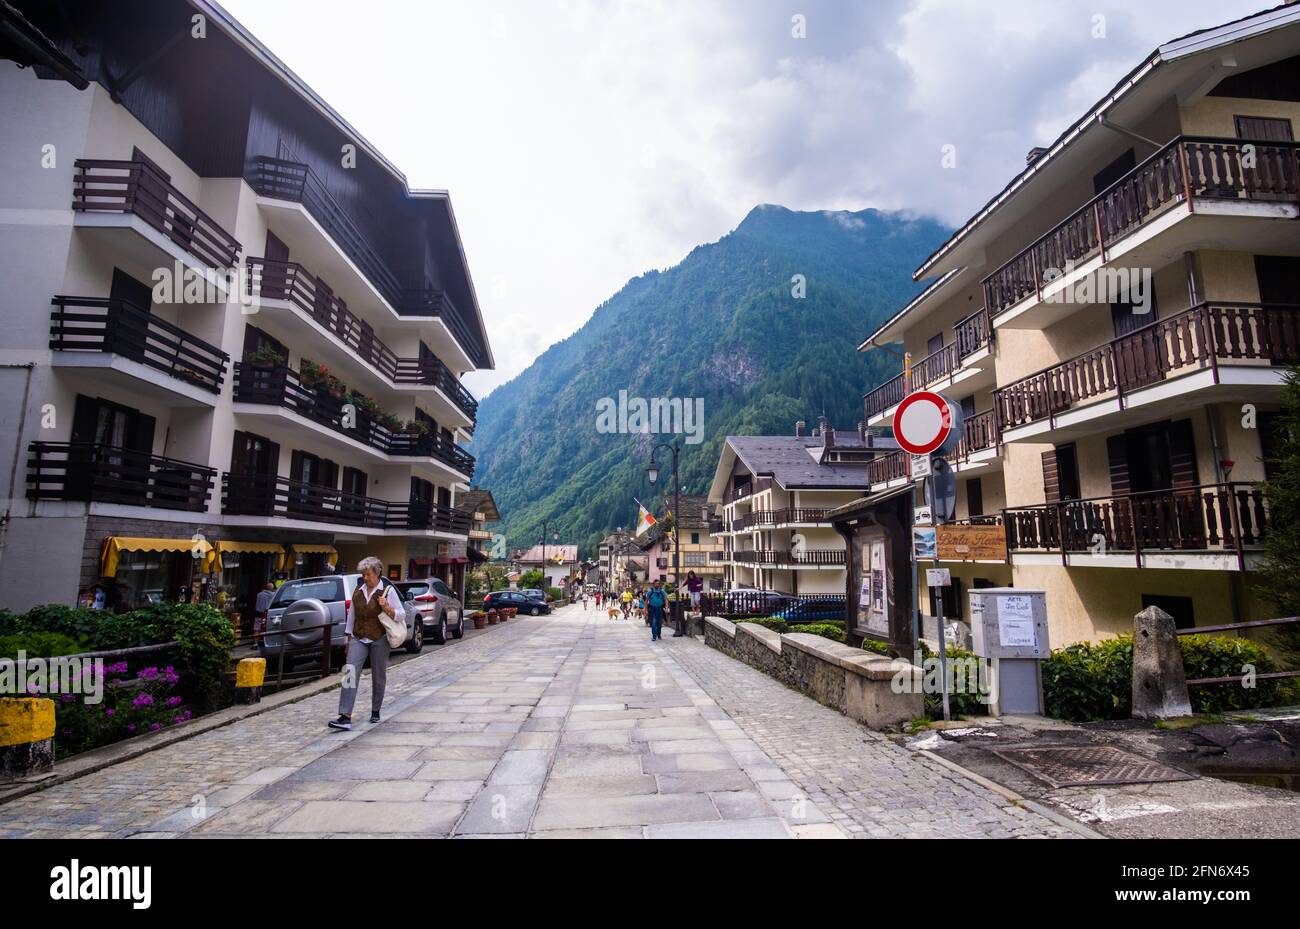 Alagna Valsesia, Italien - 22. August 2019: Schönes italienisches Dorf am Fuße des Berges Stockfoto